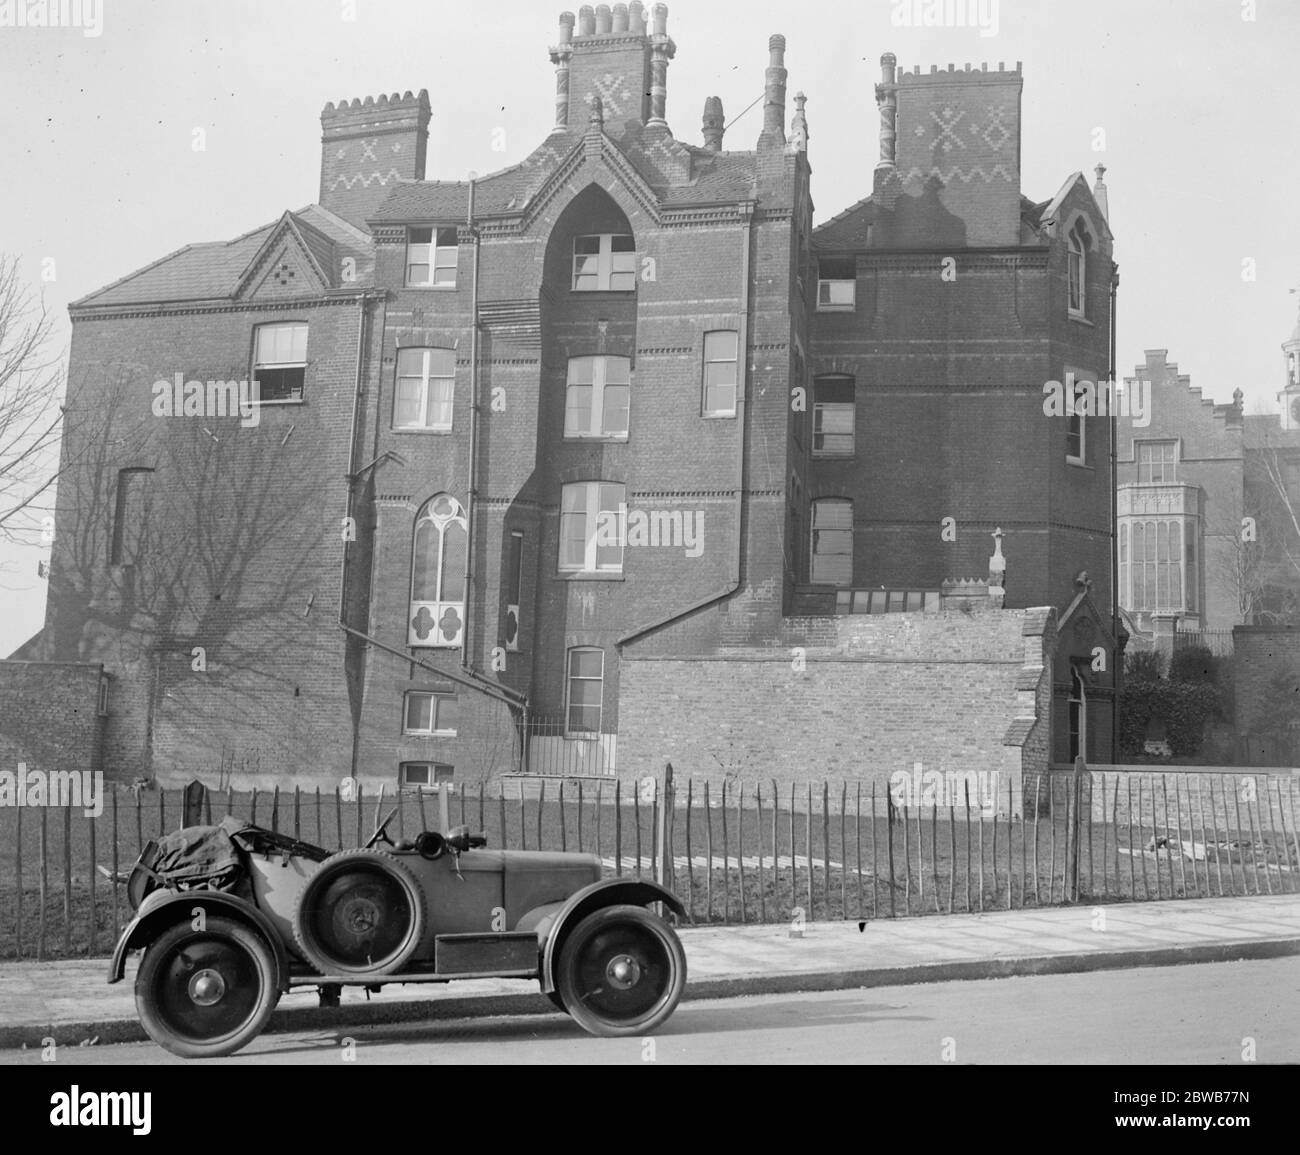 La famosa Harrow School House è visibile dopo 130 anni. La Harrow School, a nord - ovest di Londra, sta apportando notevoli miglioramenti nella High Street , che ha aperto ' Druies' una delle case piu' conosciute di Harrow dopo essere stata nascosta per 130 anni. ' Drauries' è ora visto dalla strada. 14 marzo 1924 Foto Stock